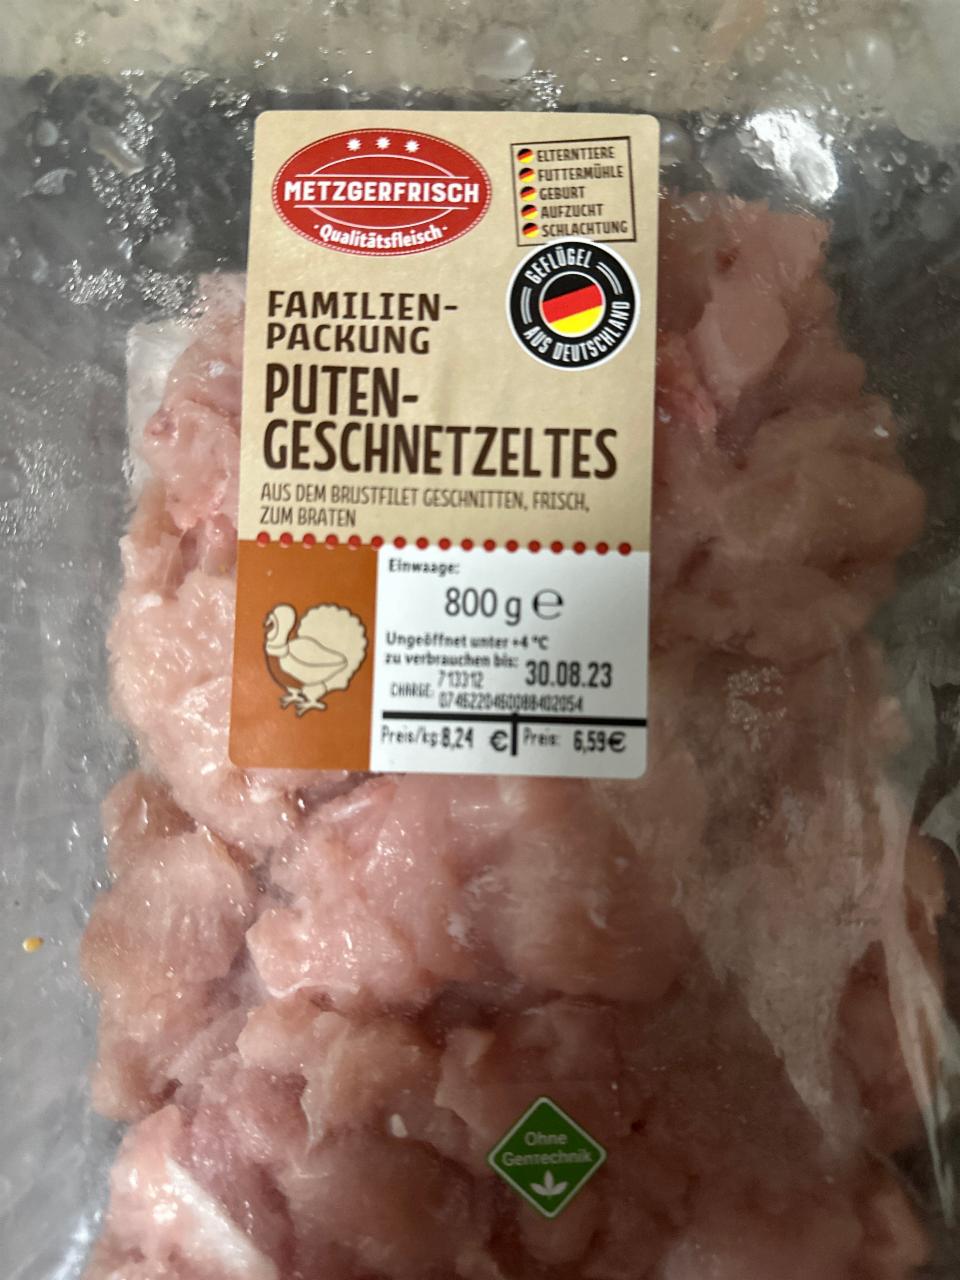 ценность пищевая - калорийность, Puten-Geschnetzeltes мясо птицы ⋙ Metzgerfrisch